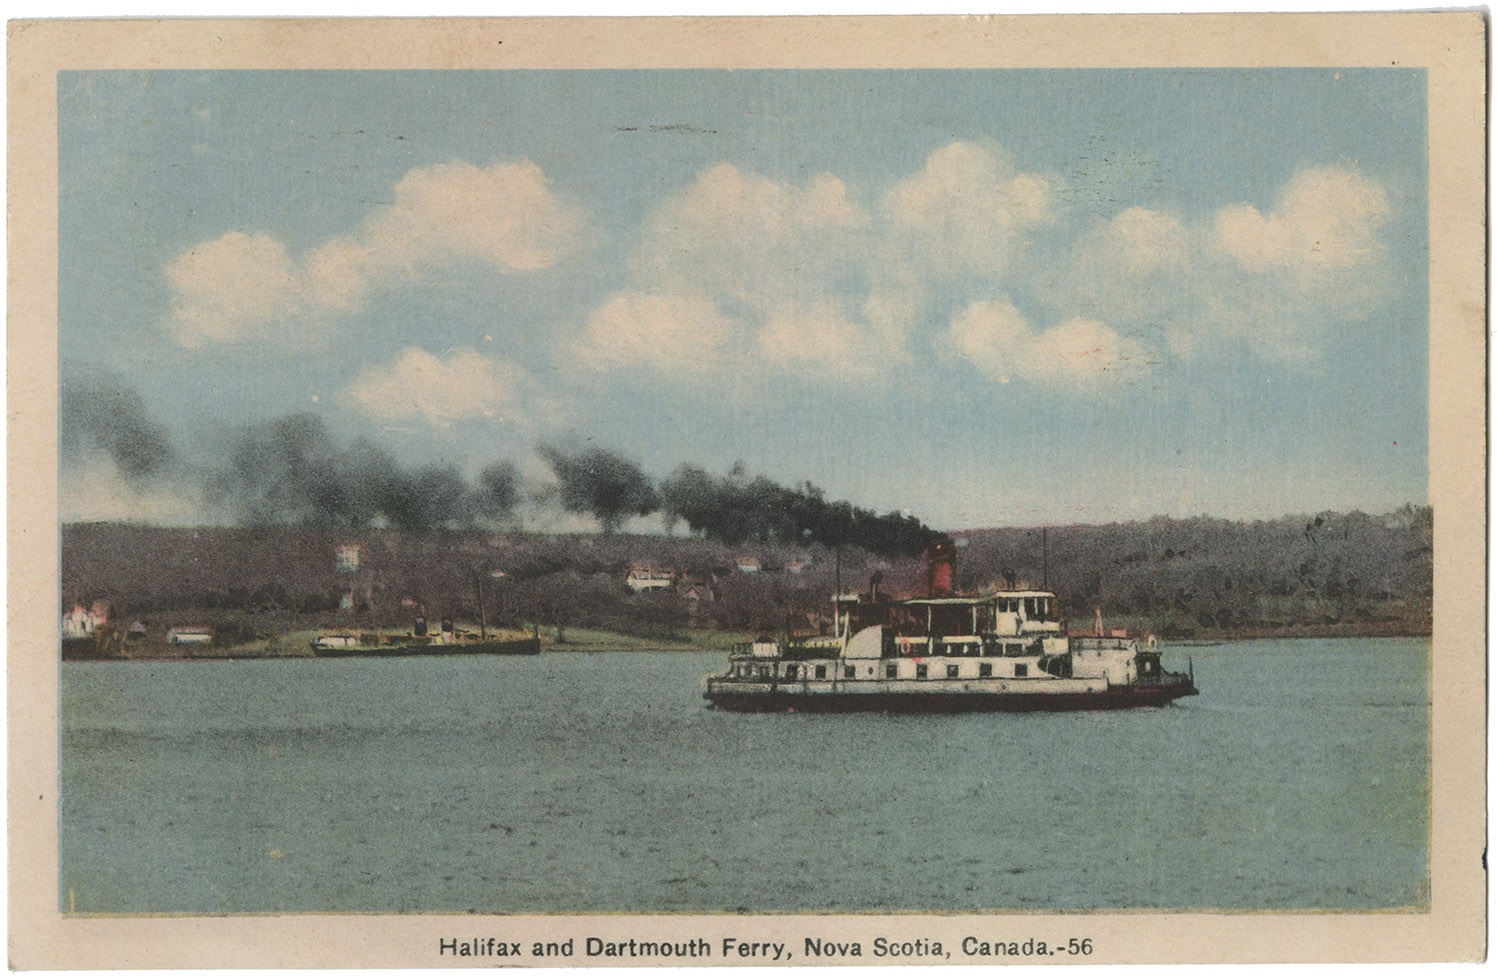 communityalbums - Halifax and Dartmouth Ferry, Nova Scotia, Canada